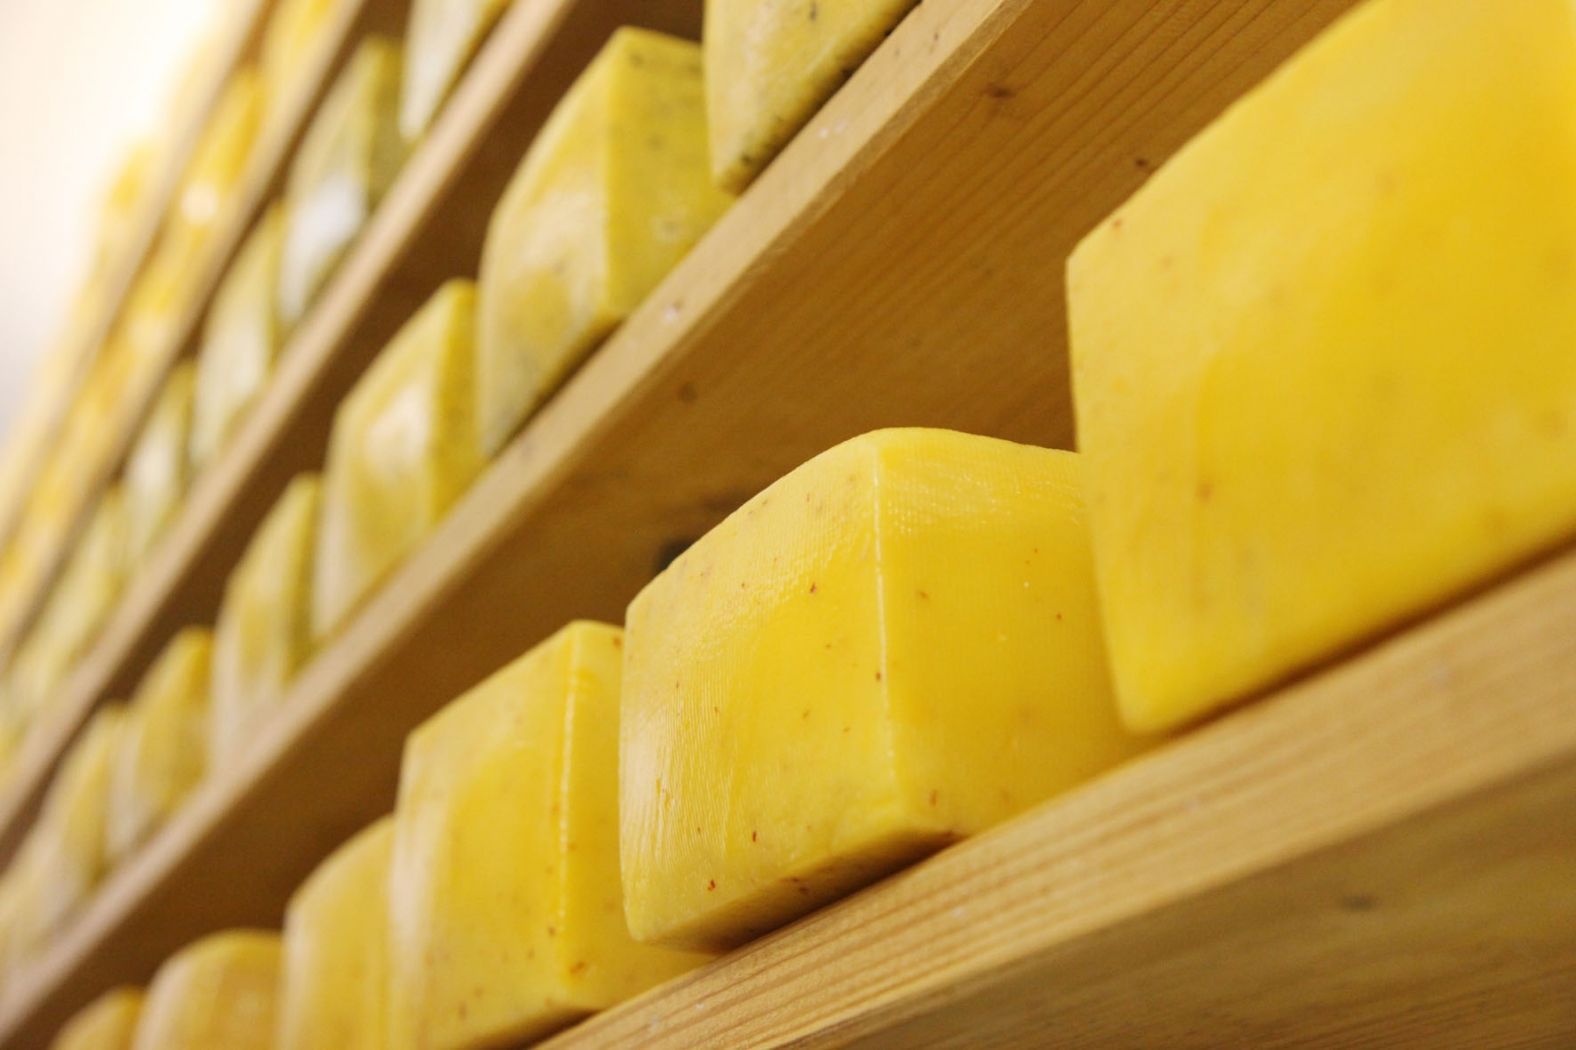 Bio-Haff Baltes Stegen cheese